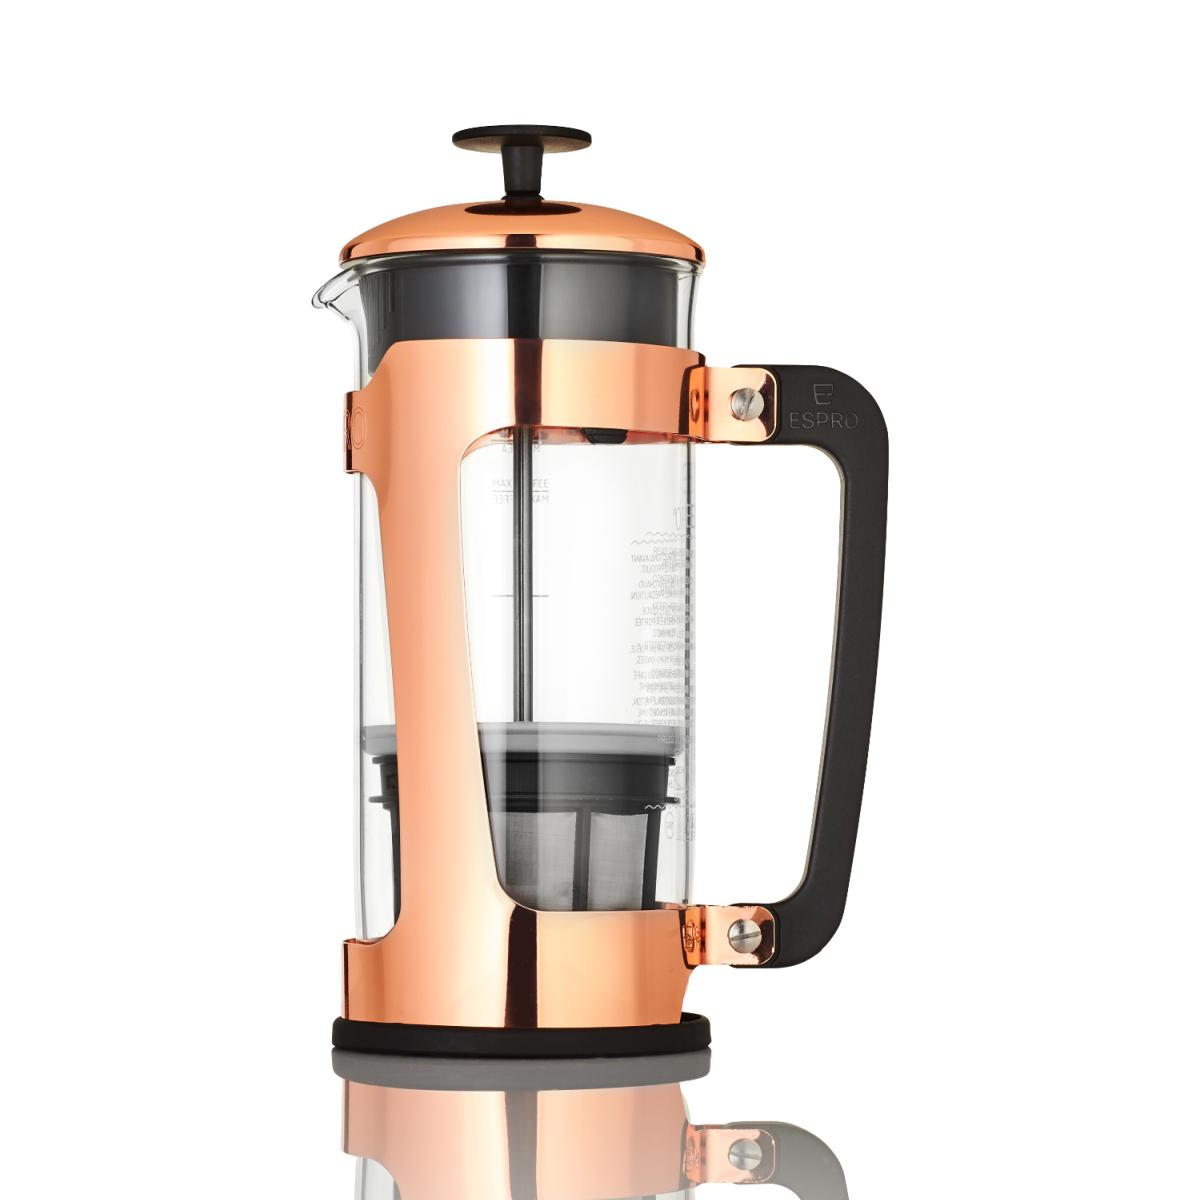 Espro P5 Press Kaffeezubereiter 950ml Kupfer